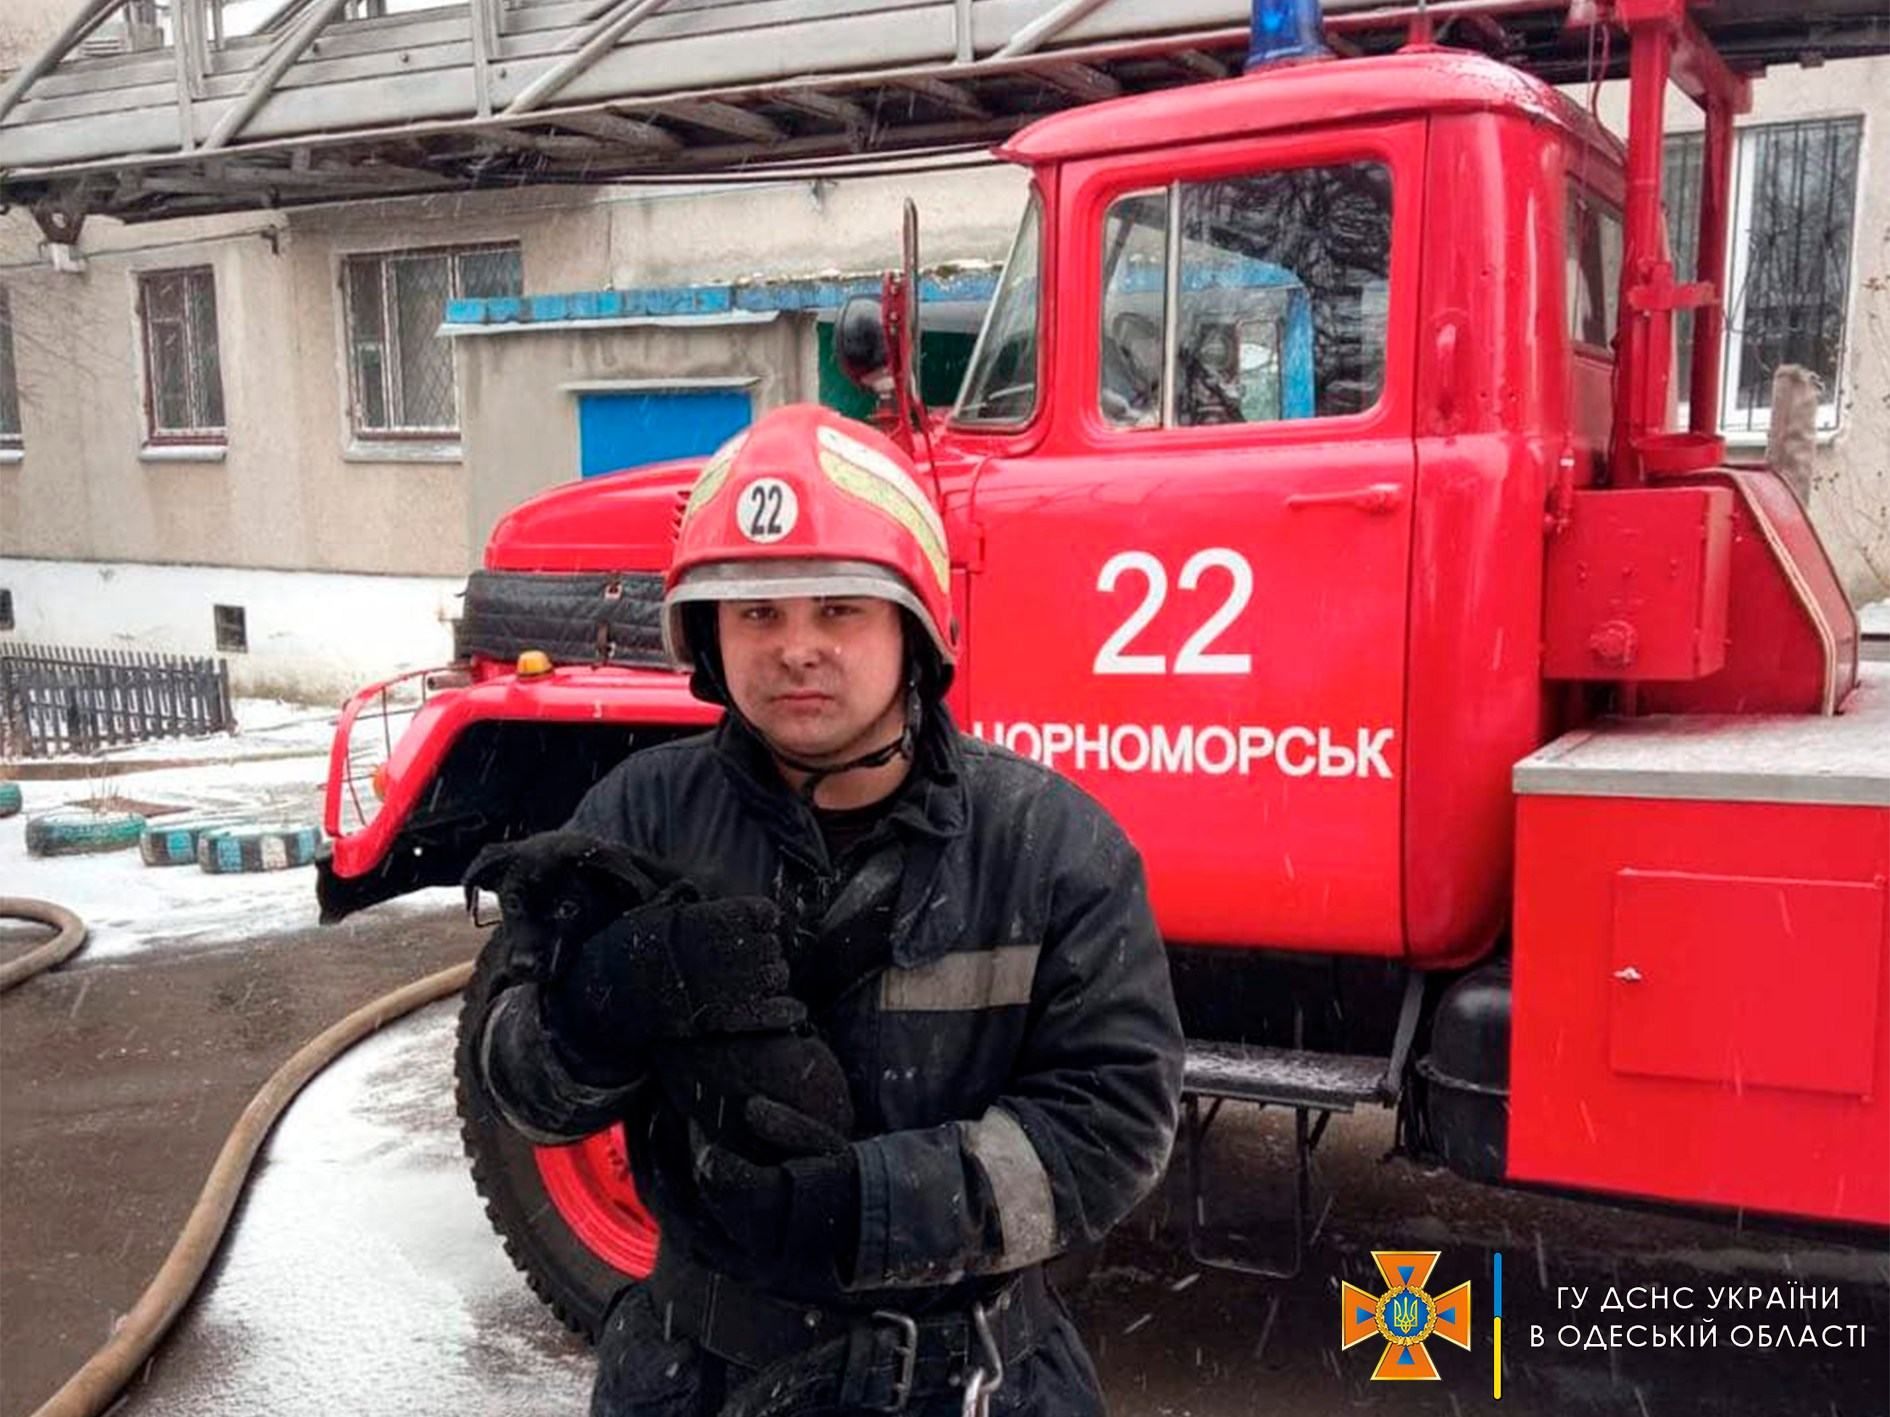 Вынесли из горящей квартиры: в Одесской области спасли мужчину с инвалидностью и его животных